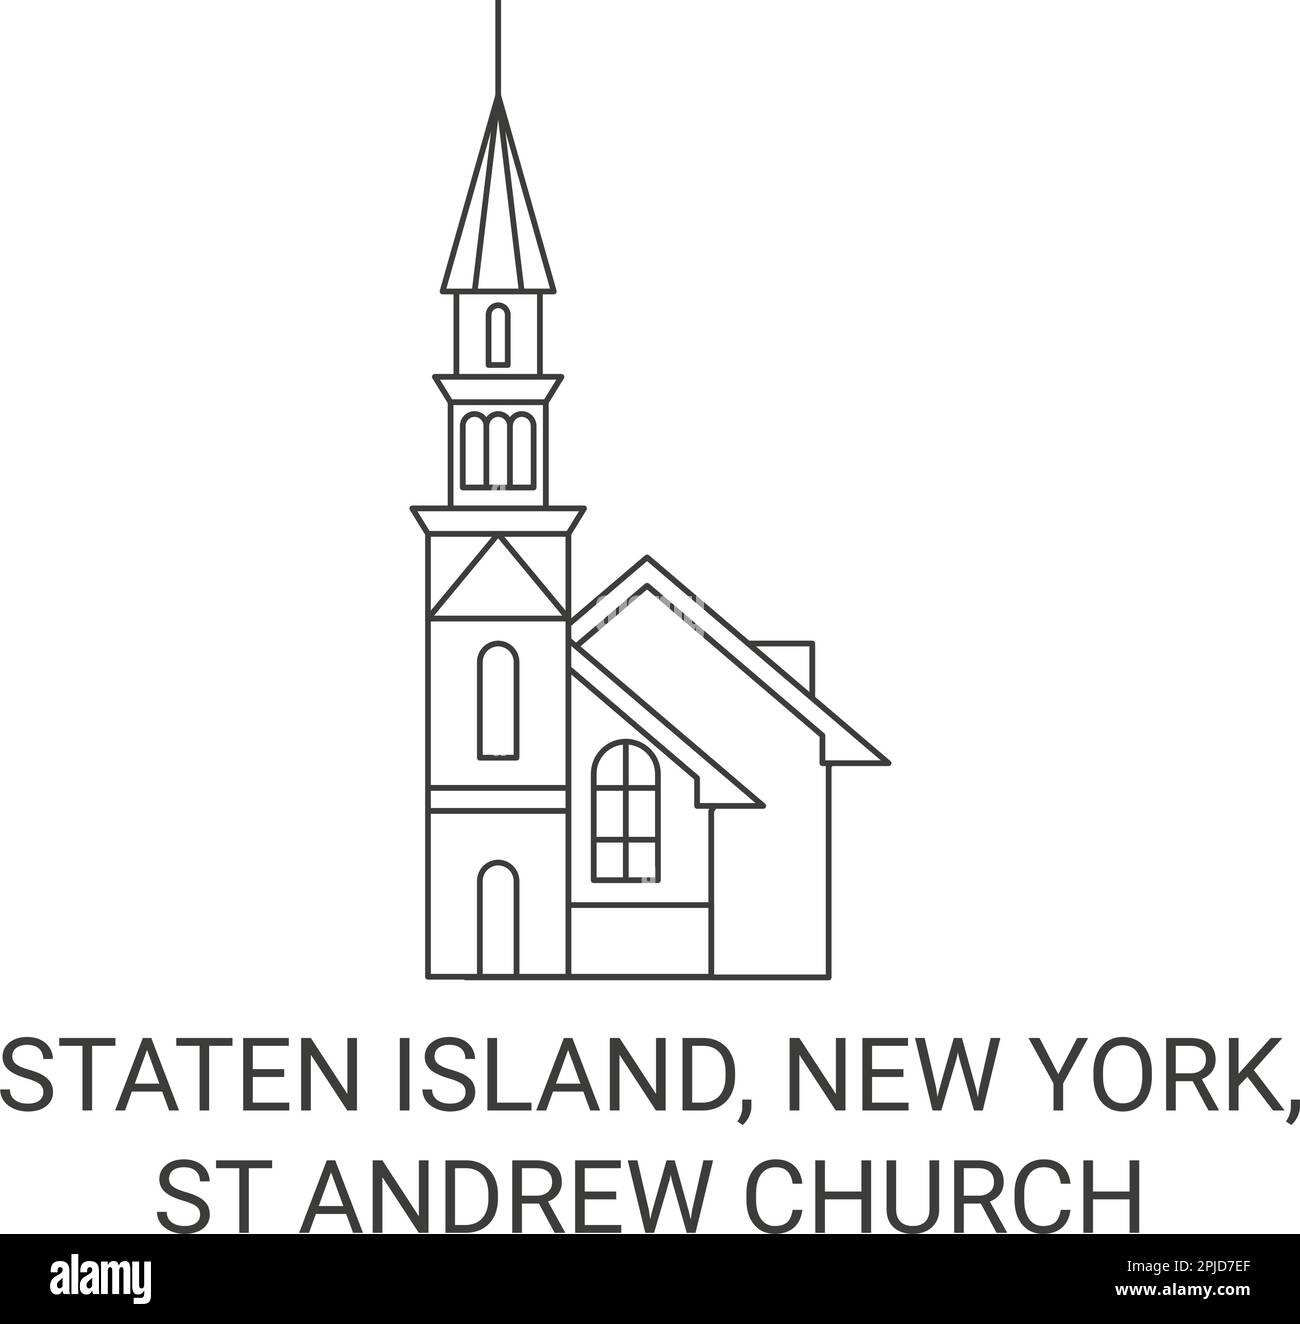 United States, Staten Island, New York, St Andrew Church travel landmark vector illustration Stock Vector